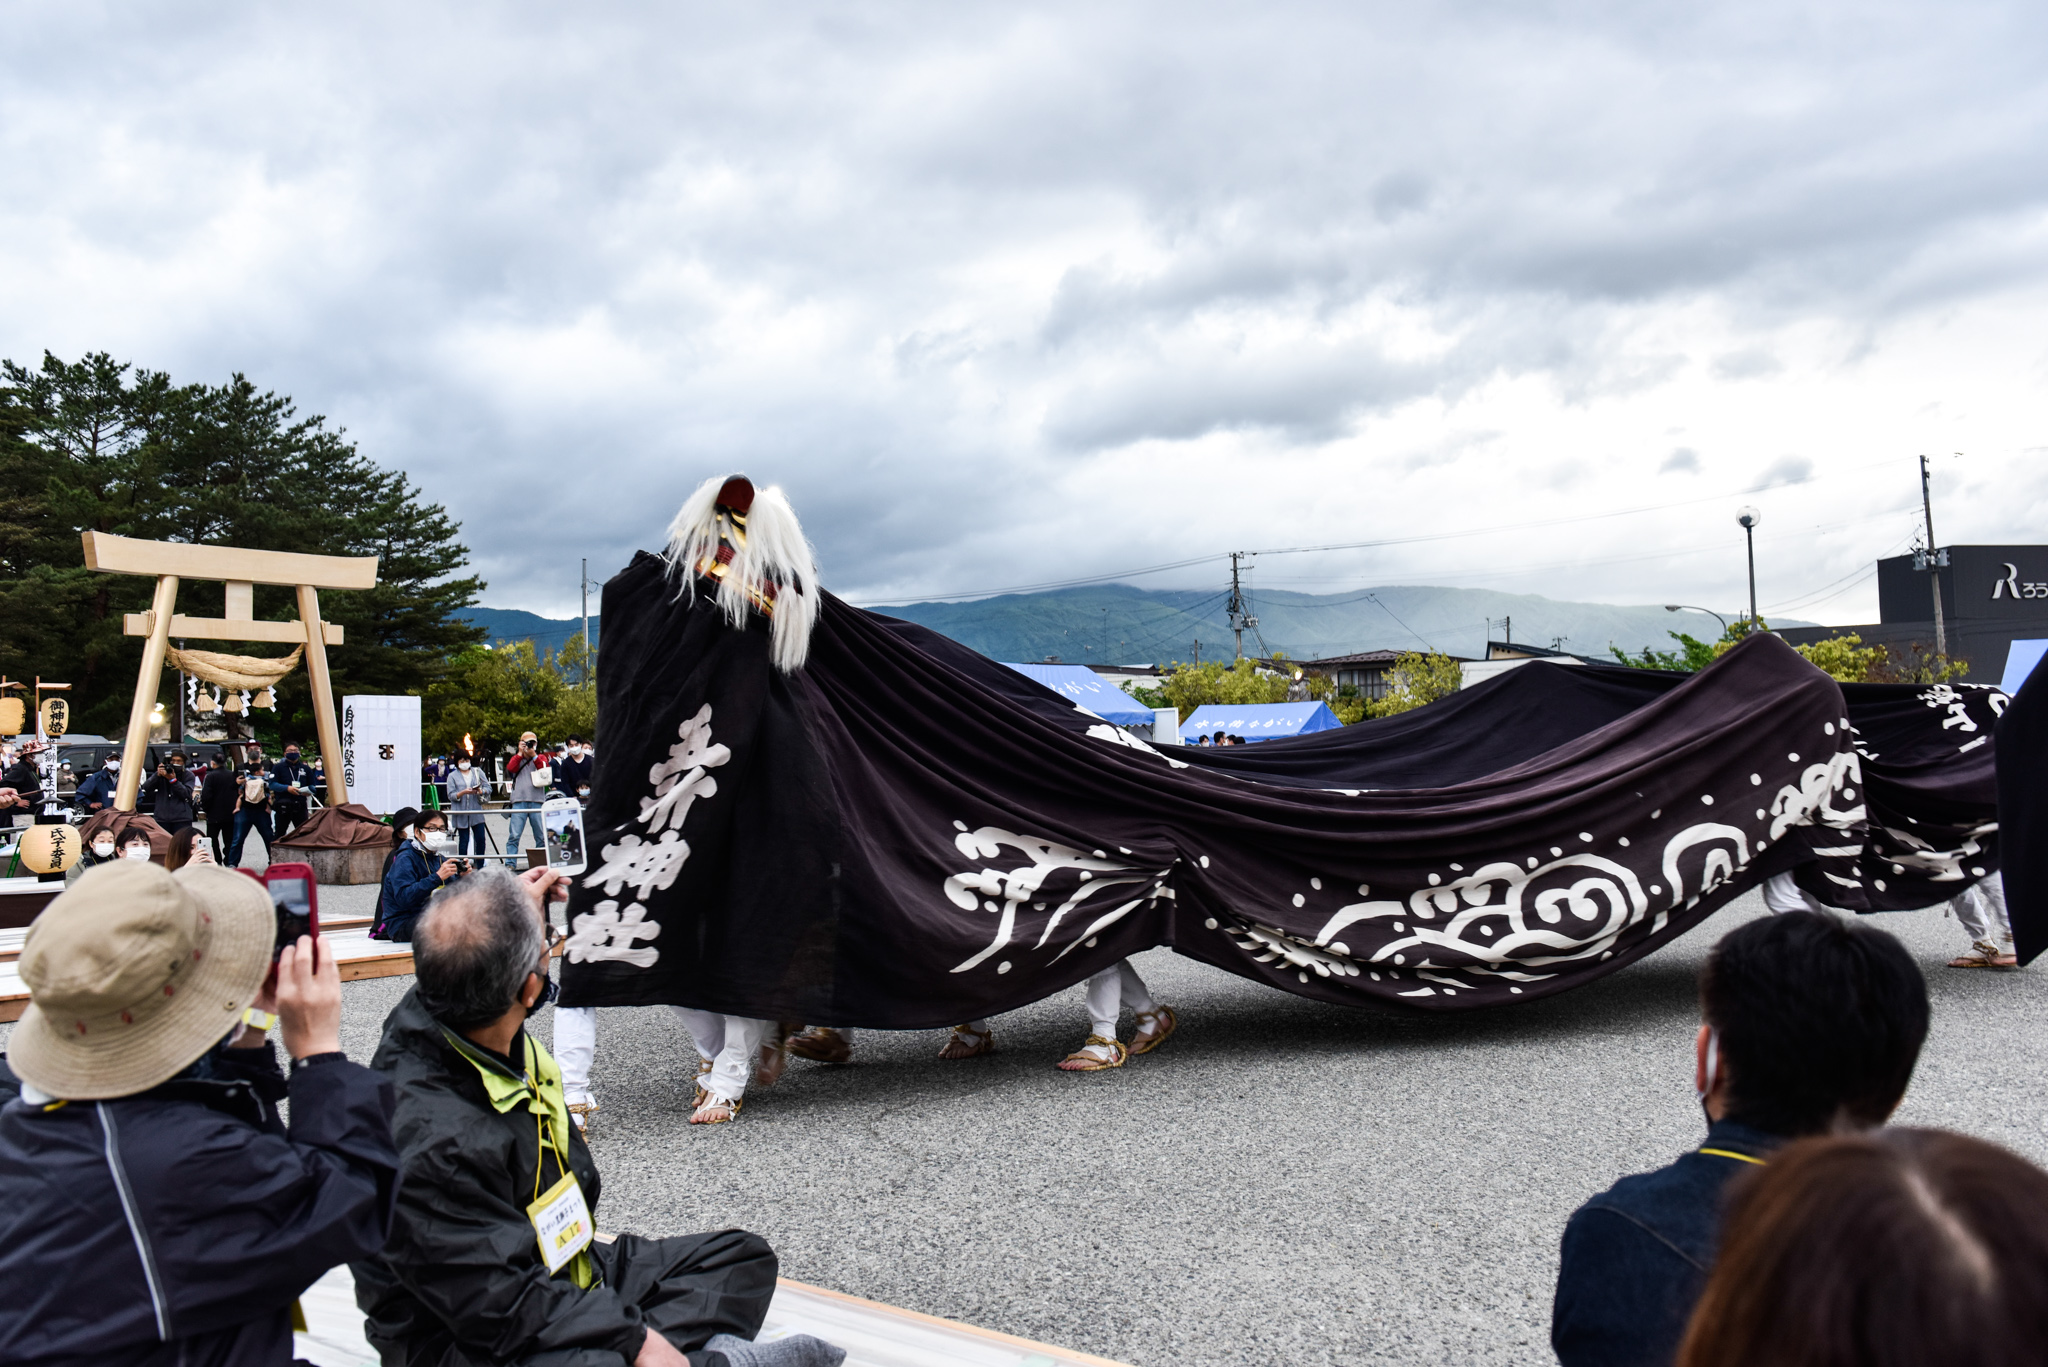 山形県でながい黒獅子まつりを開催 大きく躍動感あふれる舞いの様子 その始まりとは オマツリジャパン あなたと祭りをつなげるメディア